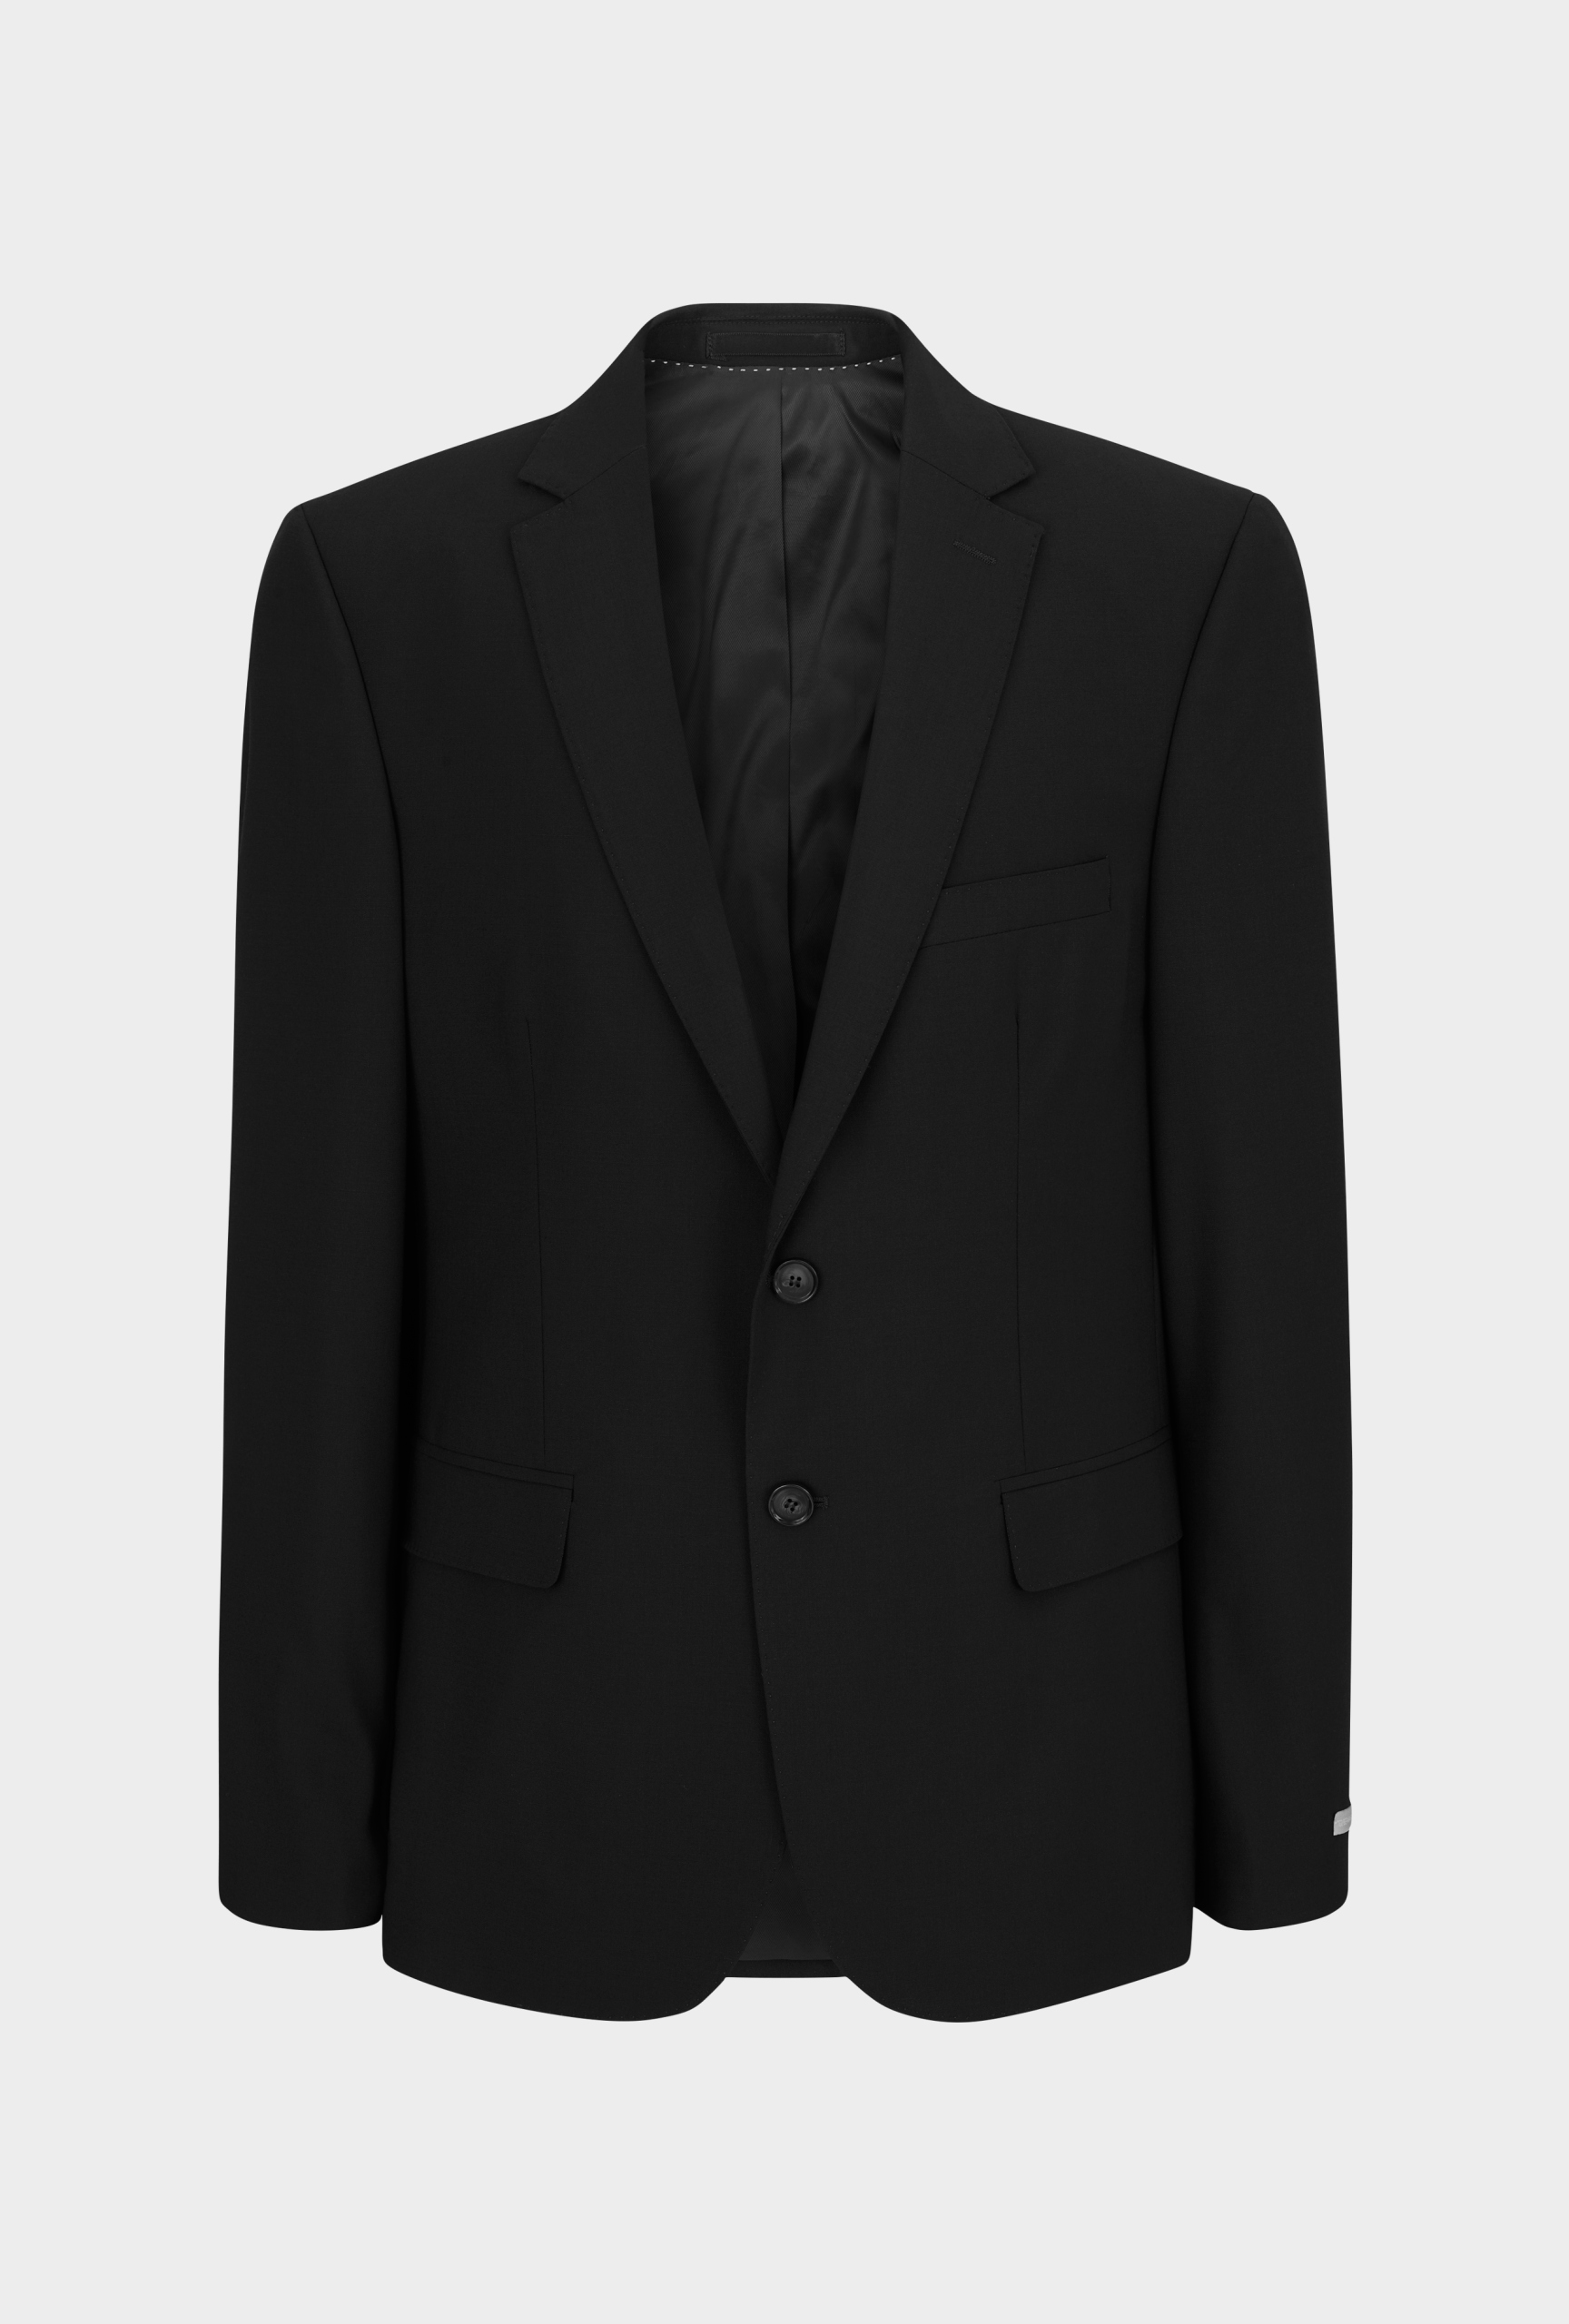 Men’s jacket Marcel | Ted Bernhardtz – At Work collection shop